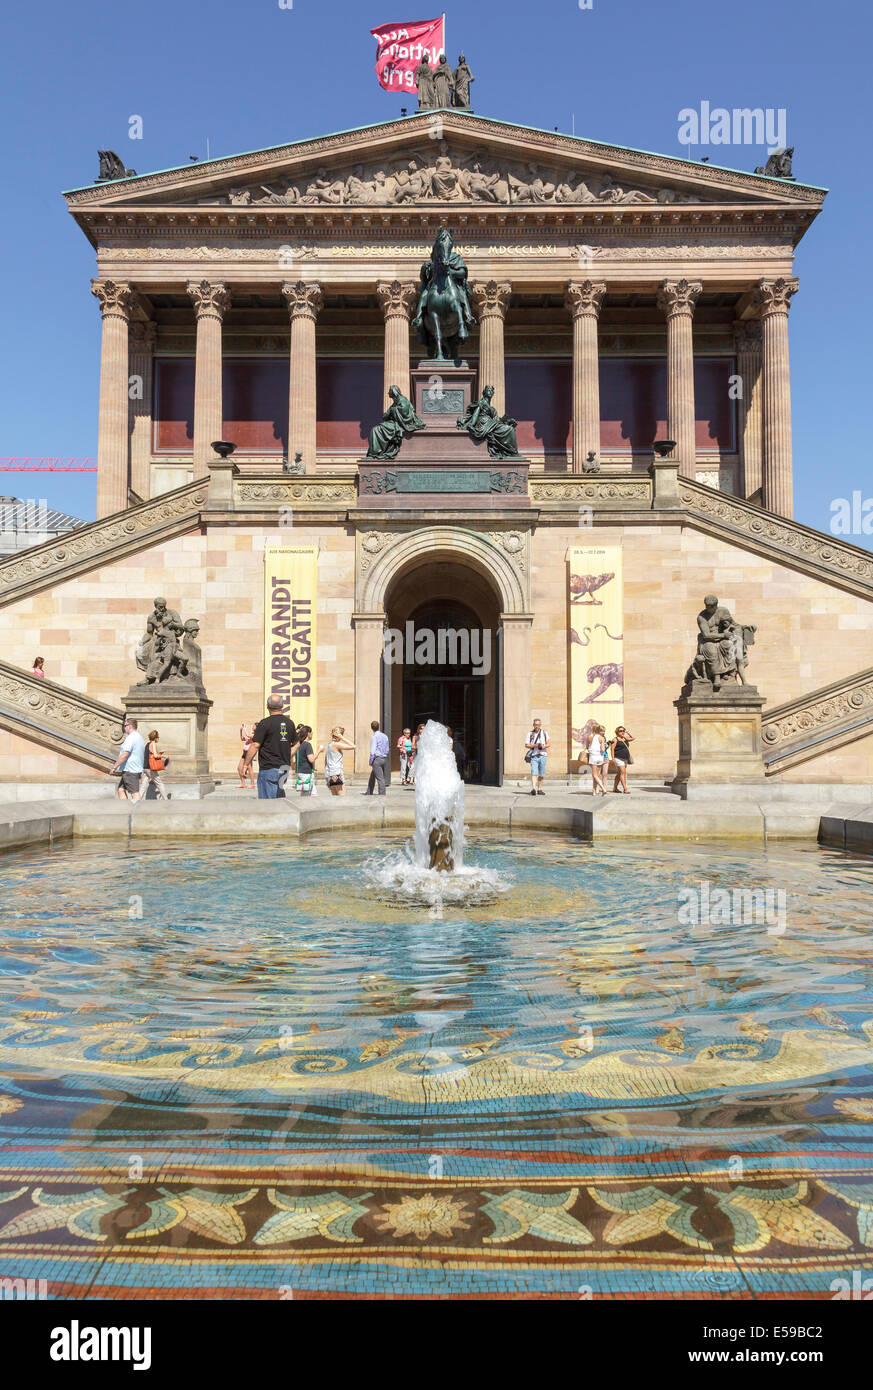 Alte Nationalgalerie, Berlin, Germany Stock Photo